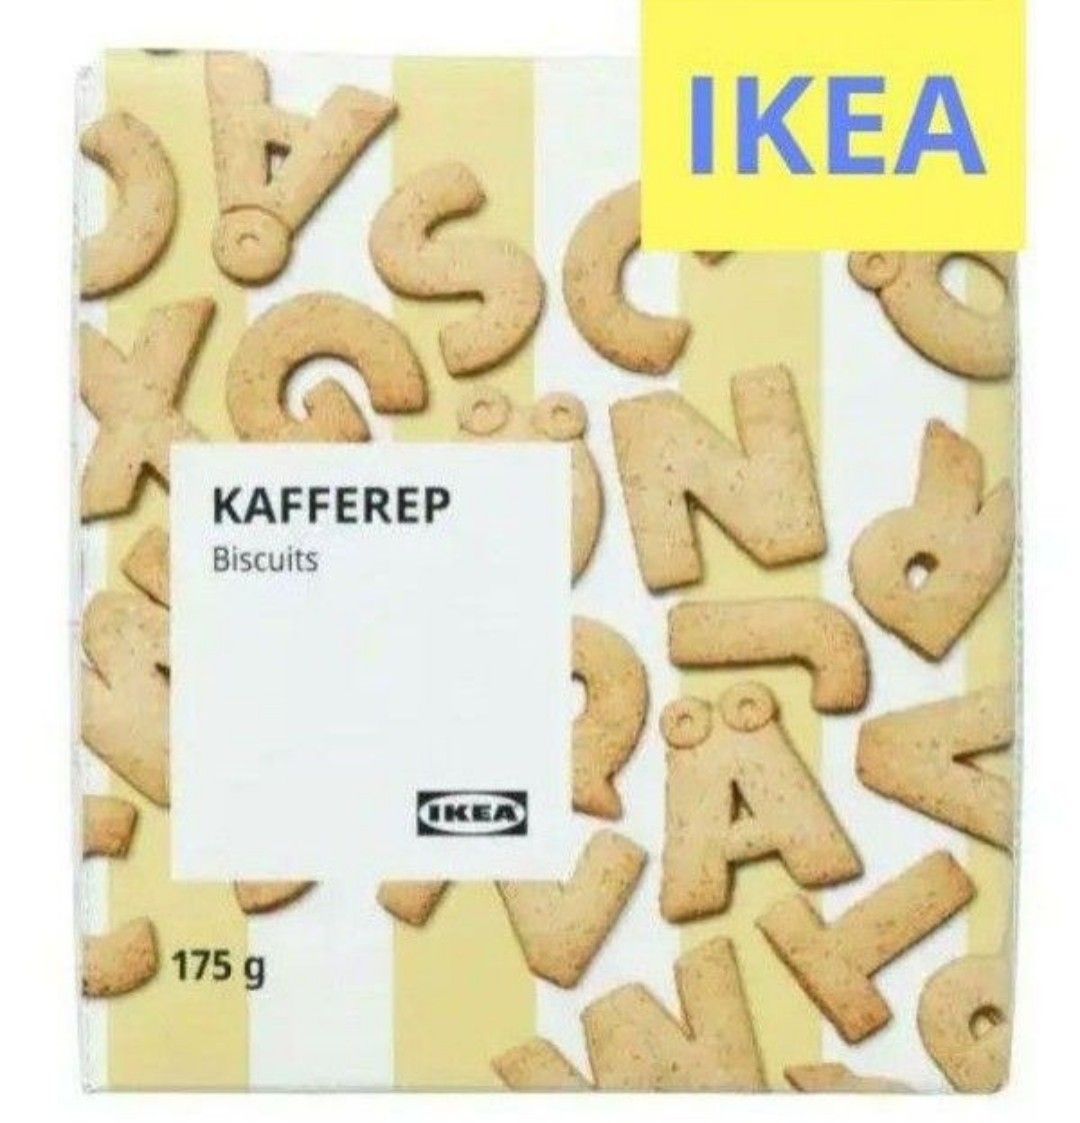 最安値！ IKEA カッフェレプ アルファベットビスケット 1箱  デコレーション お誕生日 プレゼント プチギフト 